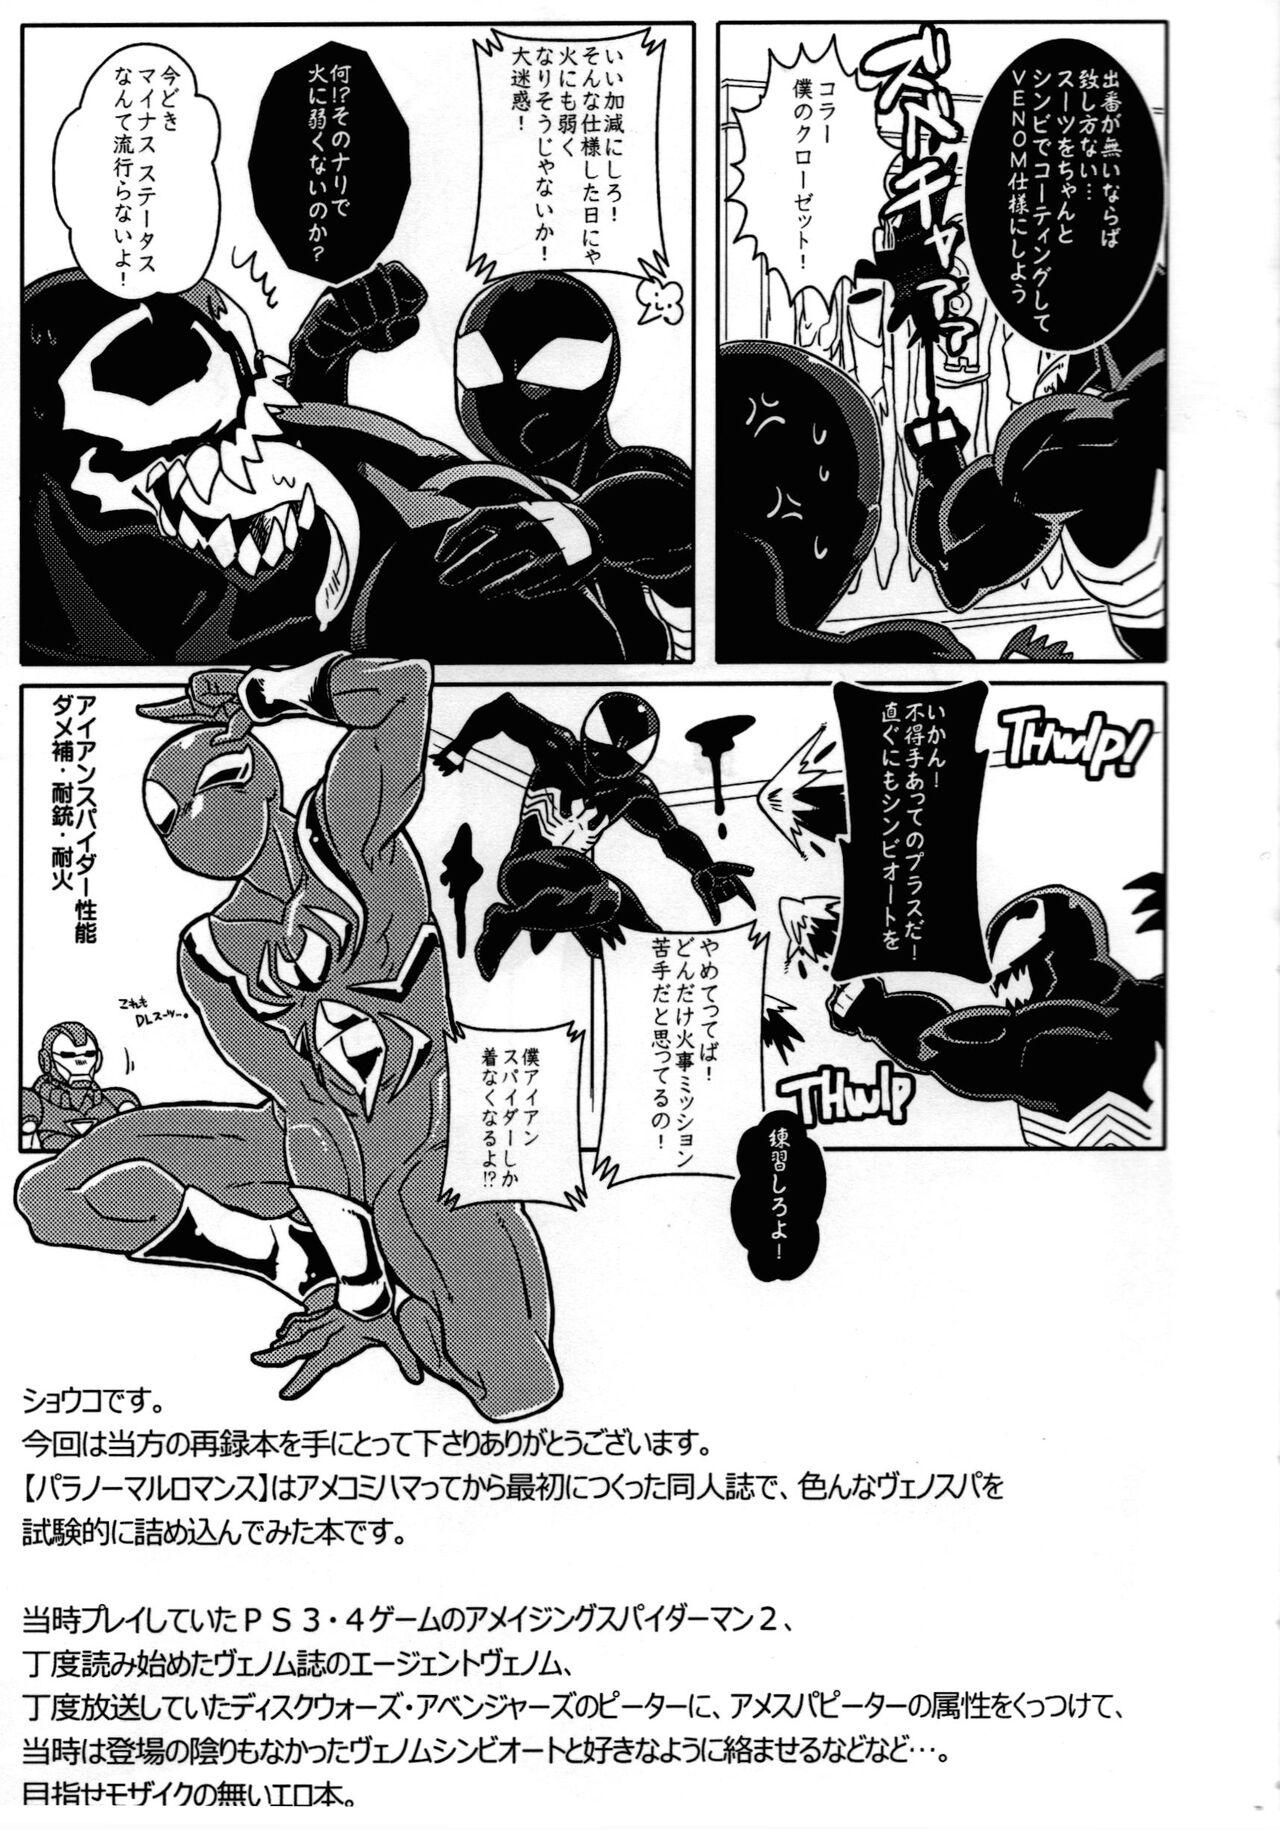 Strange Spider‐Man REMIX - Spider man Cum Eating - Page 7